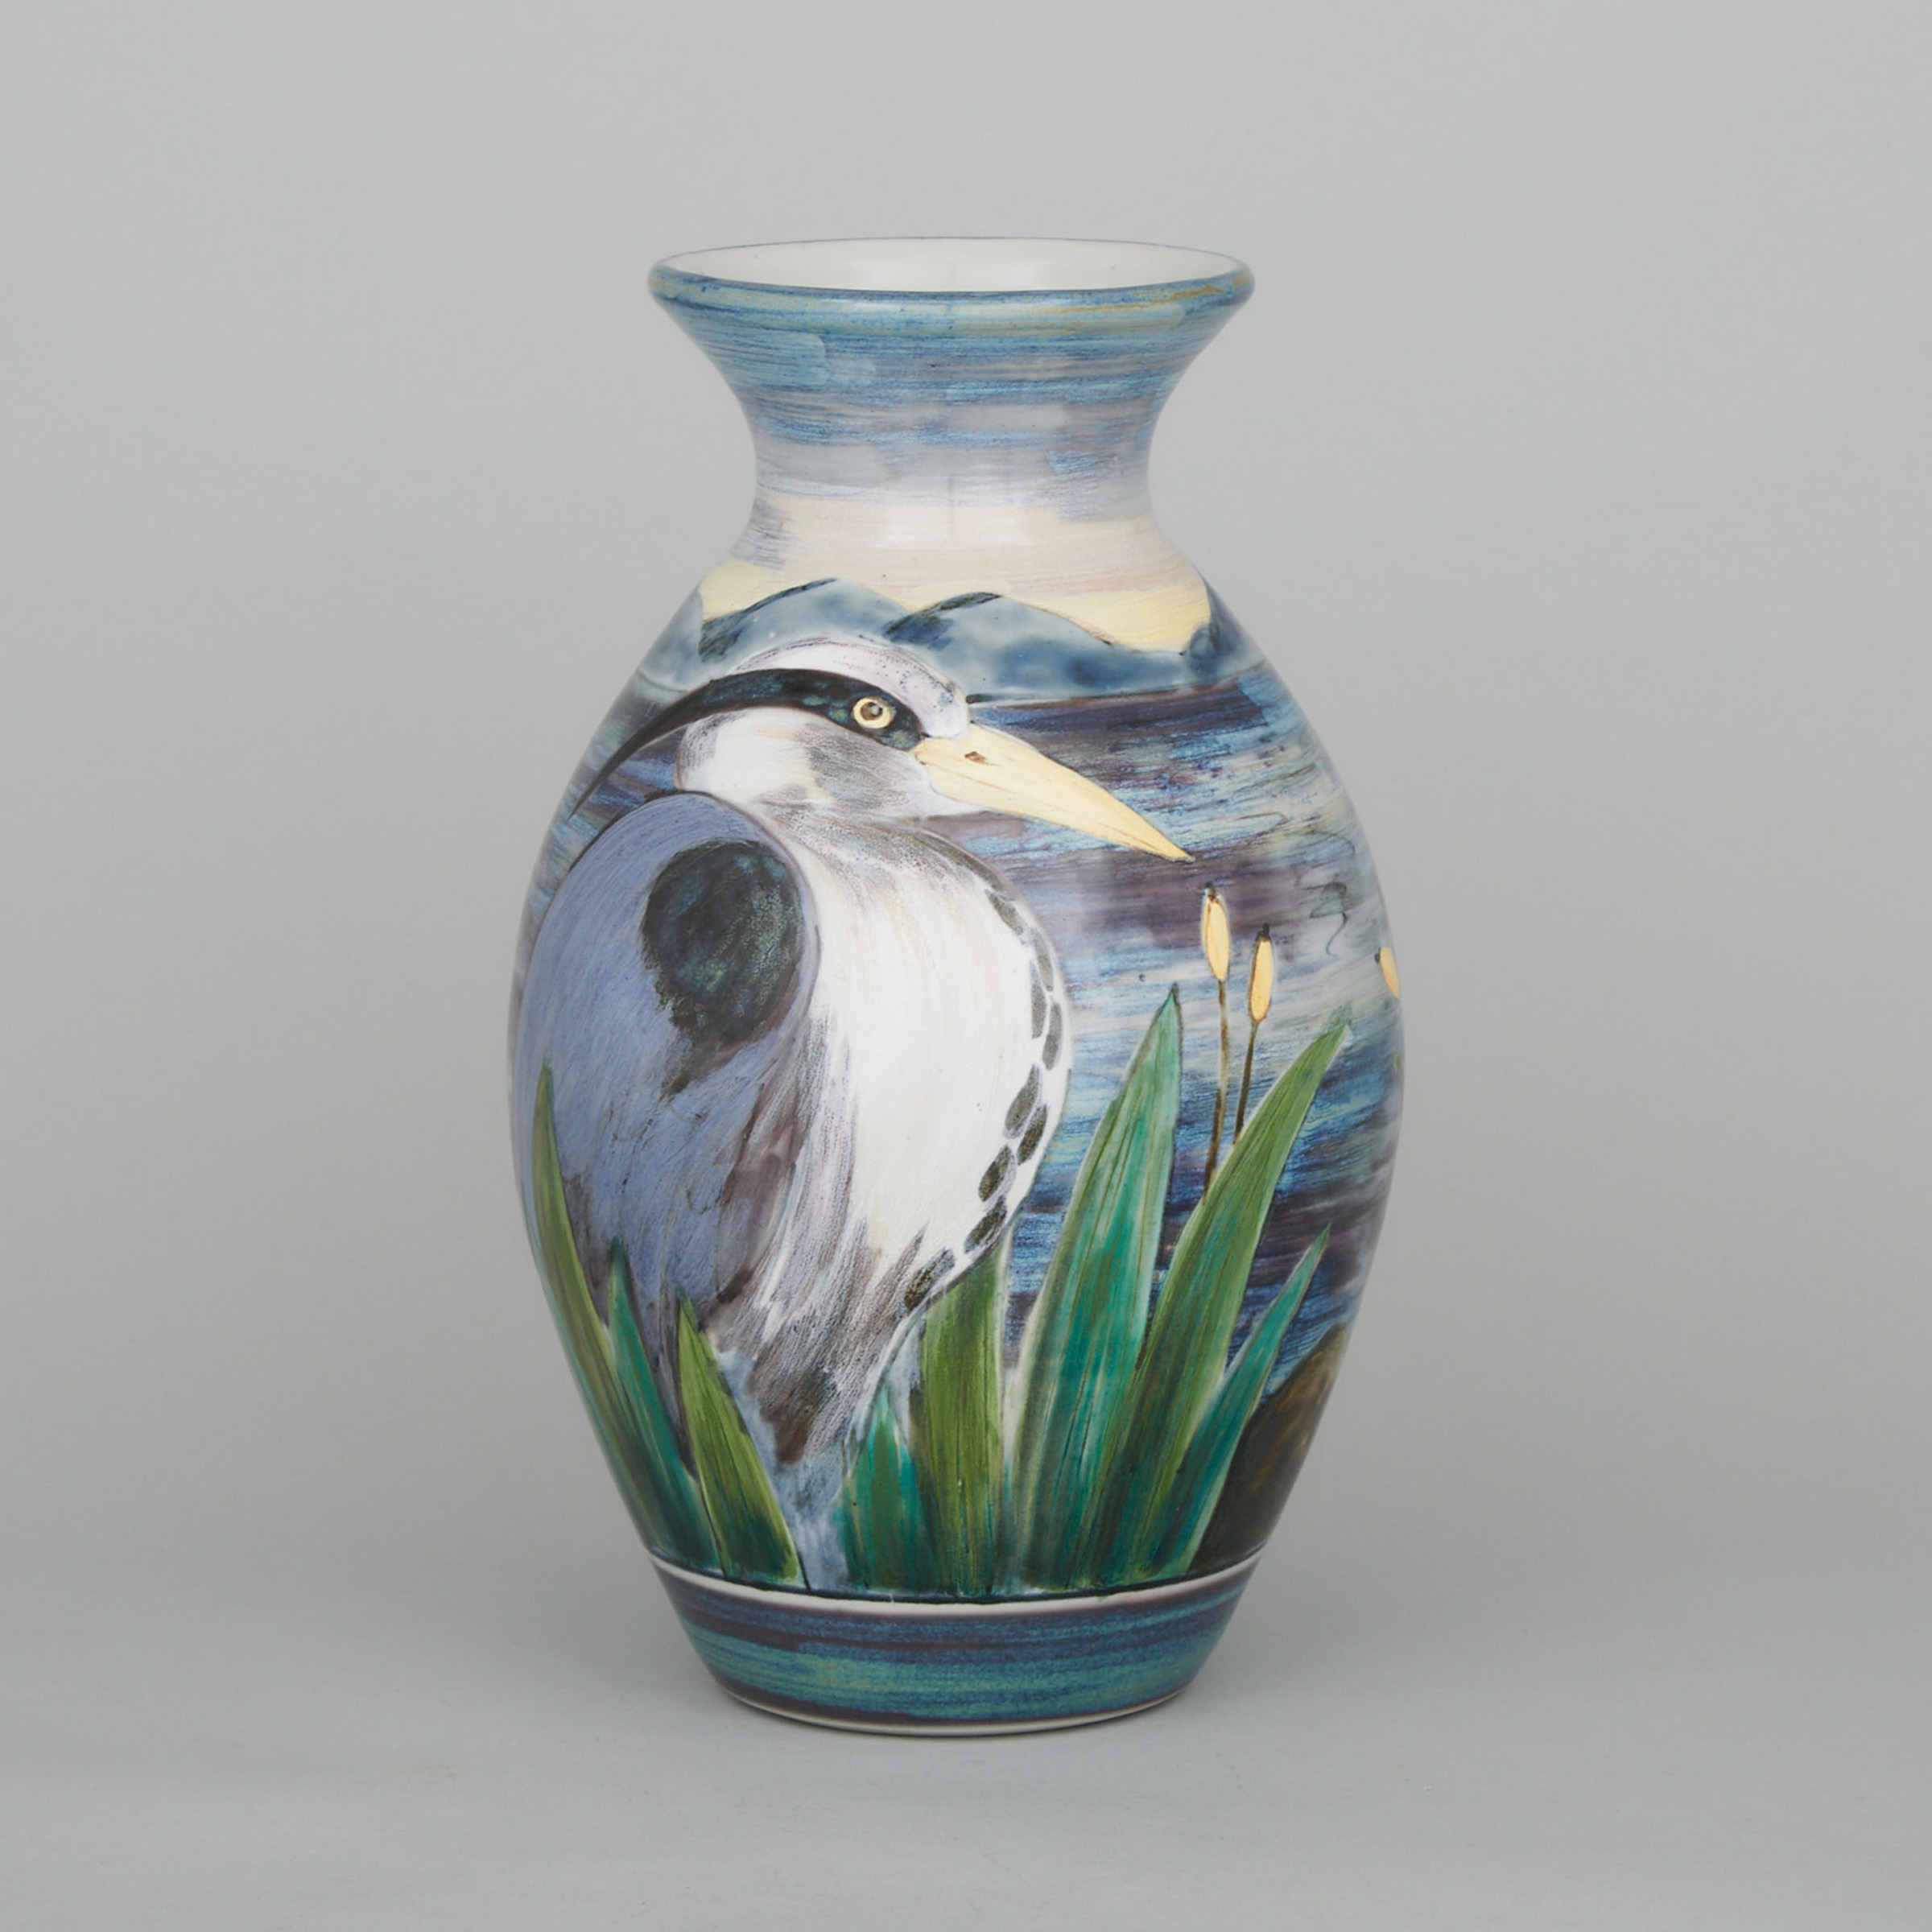 Highland Stoneware Vase, c. 2000